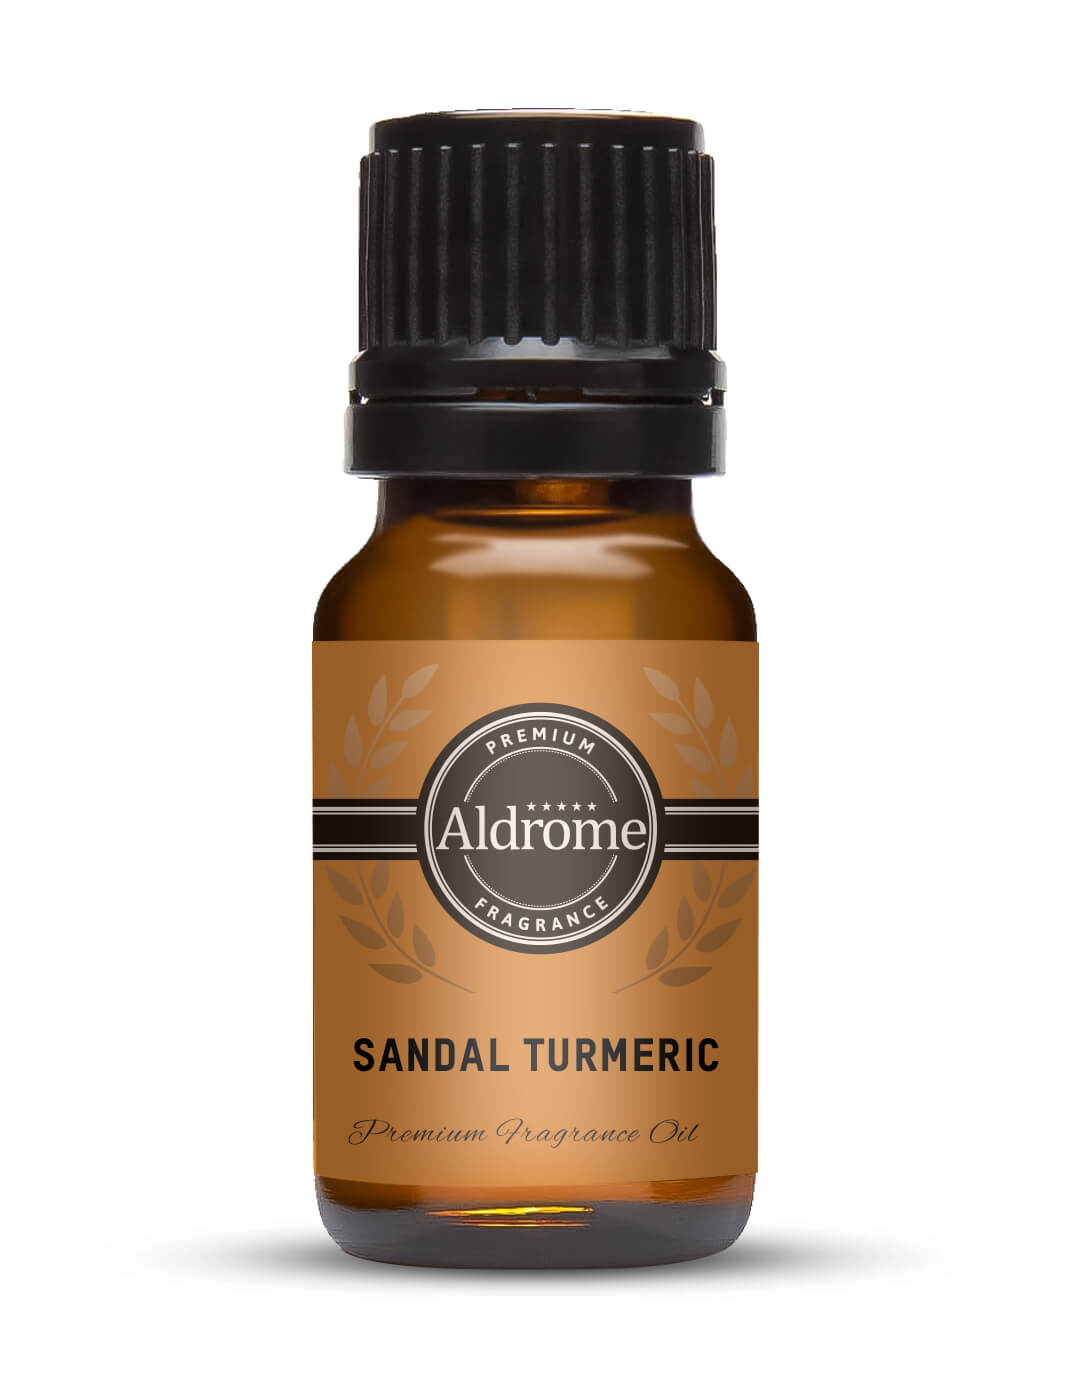 Sandal Turmeric Fragrance Oil - 10ml | Buy Sandal Turmeric Fragrance Oil 